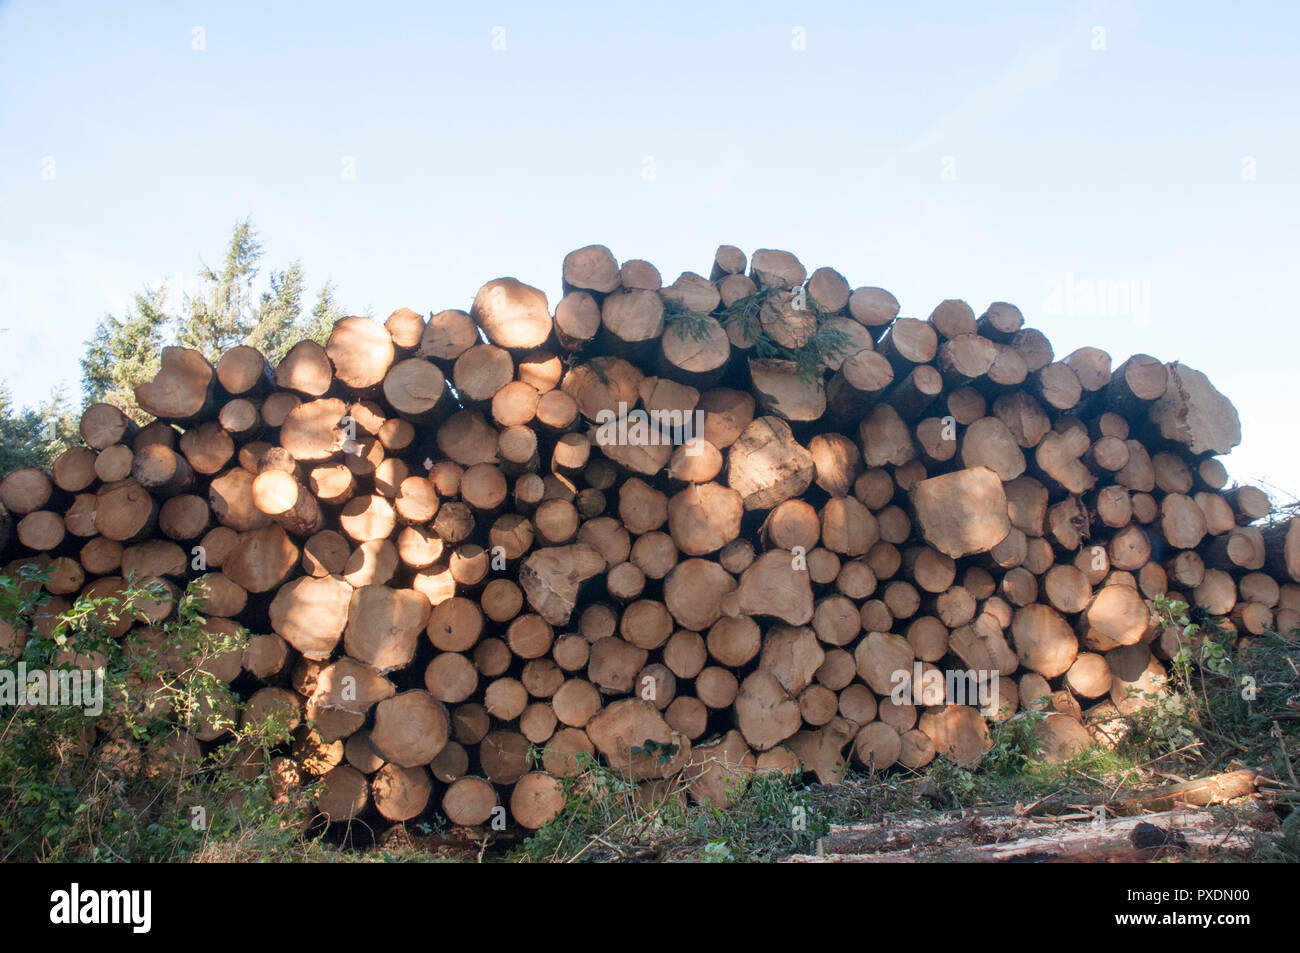 Pile de troncs d'arbres coupés après avoir été abattu en raison de l'insécurité après beaucoup de grands vents. Seront recyclés dans d'autres projets dans le parc. Banque D'Images